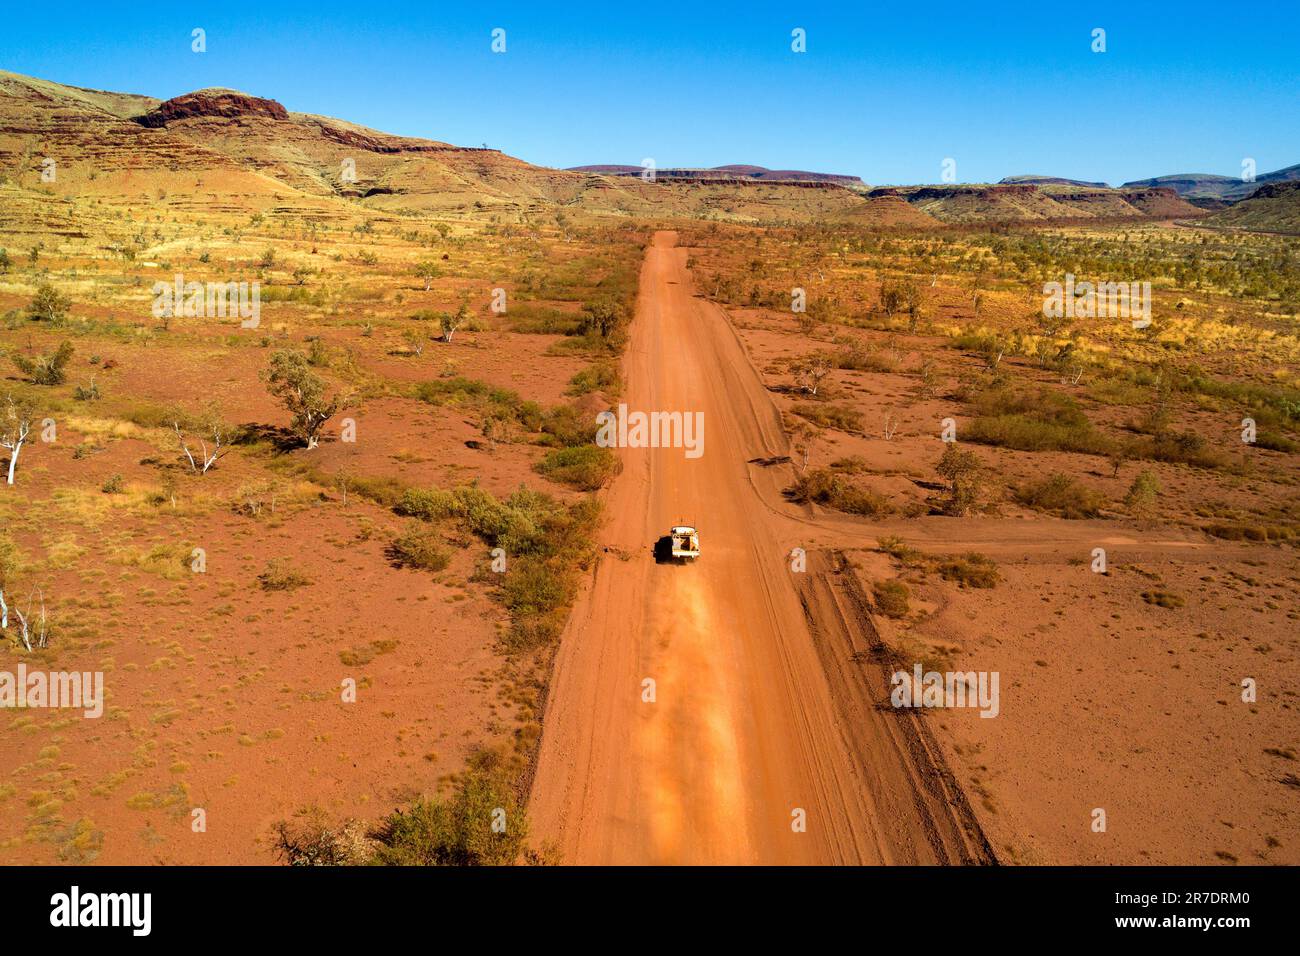 Vue Arial d'une voiture voyageant sur une route rouge poussiéreuse dans l'Outback australien, Pilbara, Australie occidentale Banque D'Images